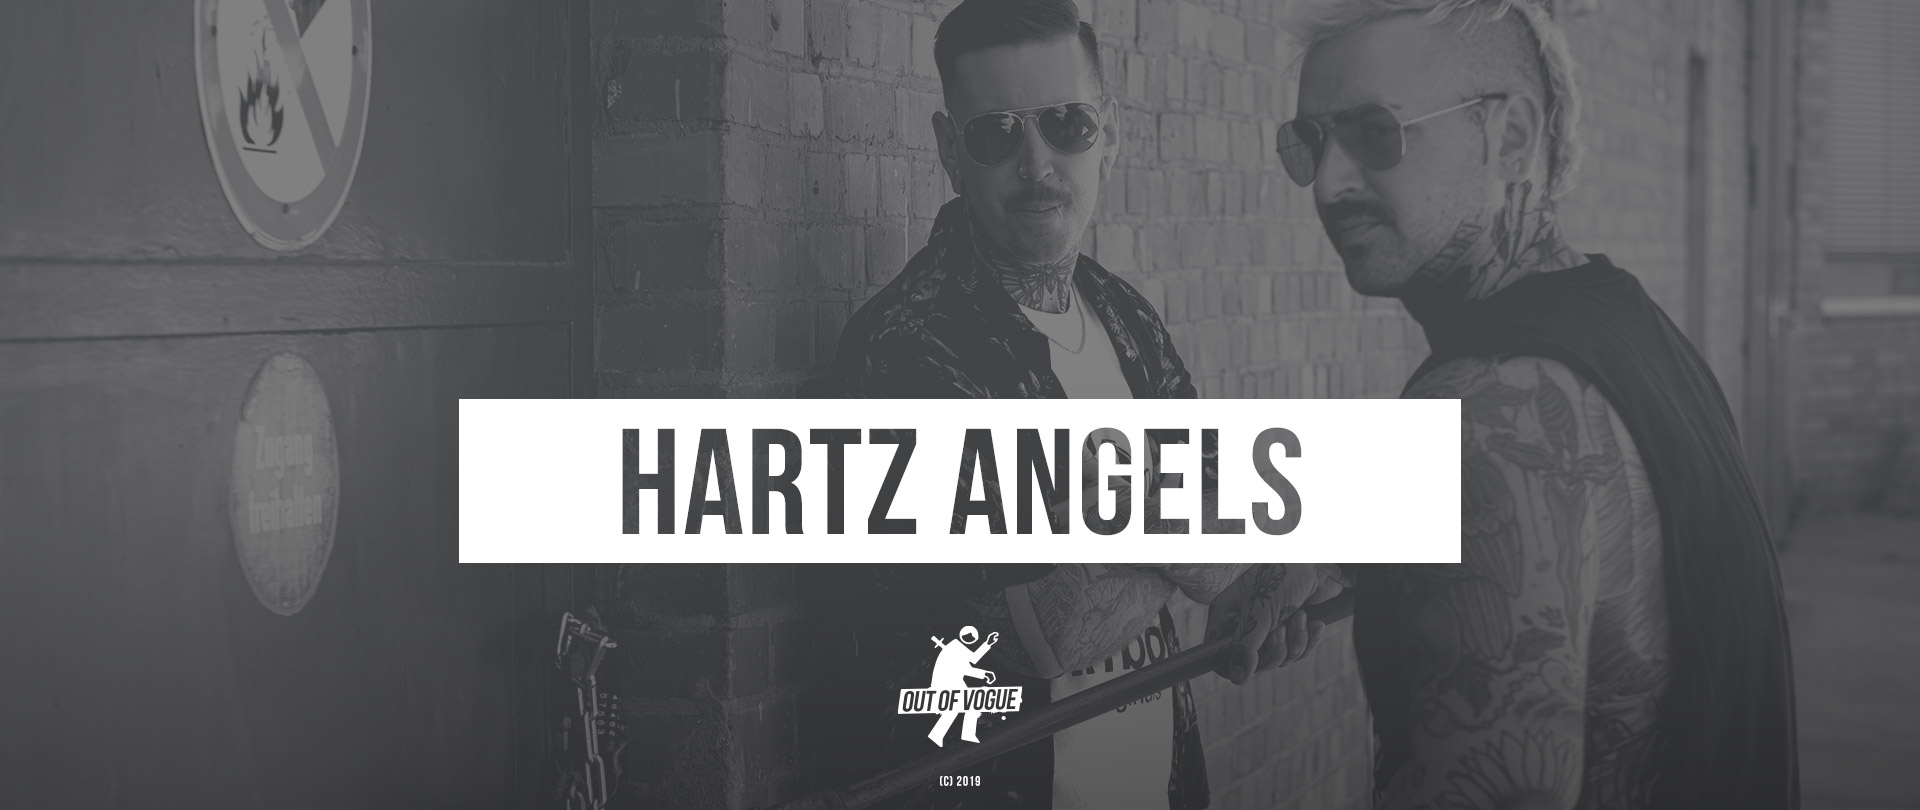 Hartz Angels at OUT OF VOGUE SHOP / DE